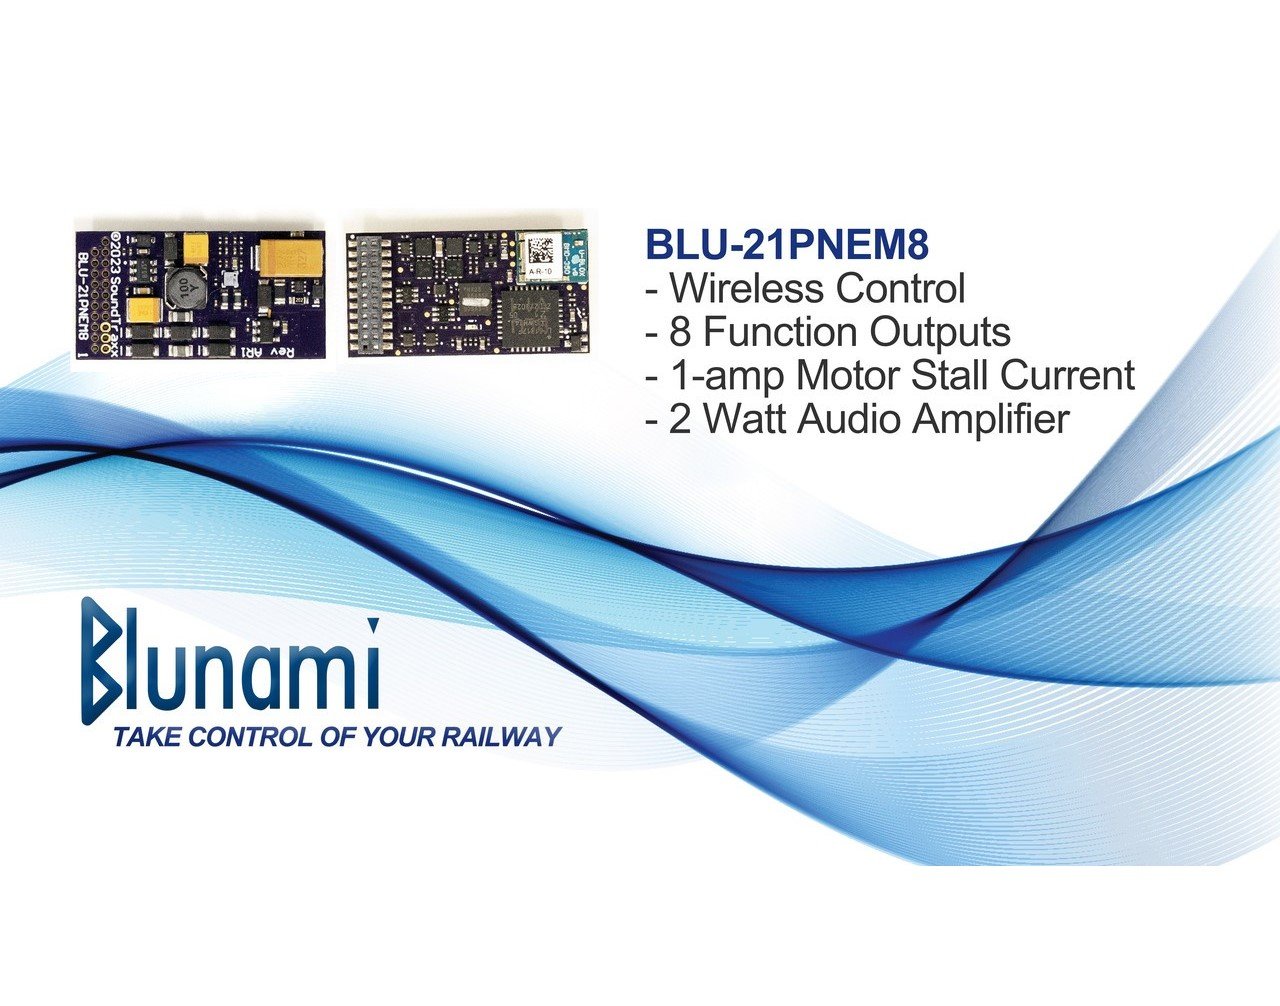 SoundTraxx Blunami BLU-21PNEM8 885611 ALCO Diesel Wireless DCC/SOUND Decoder